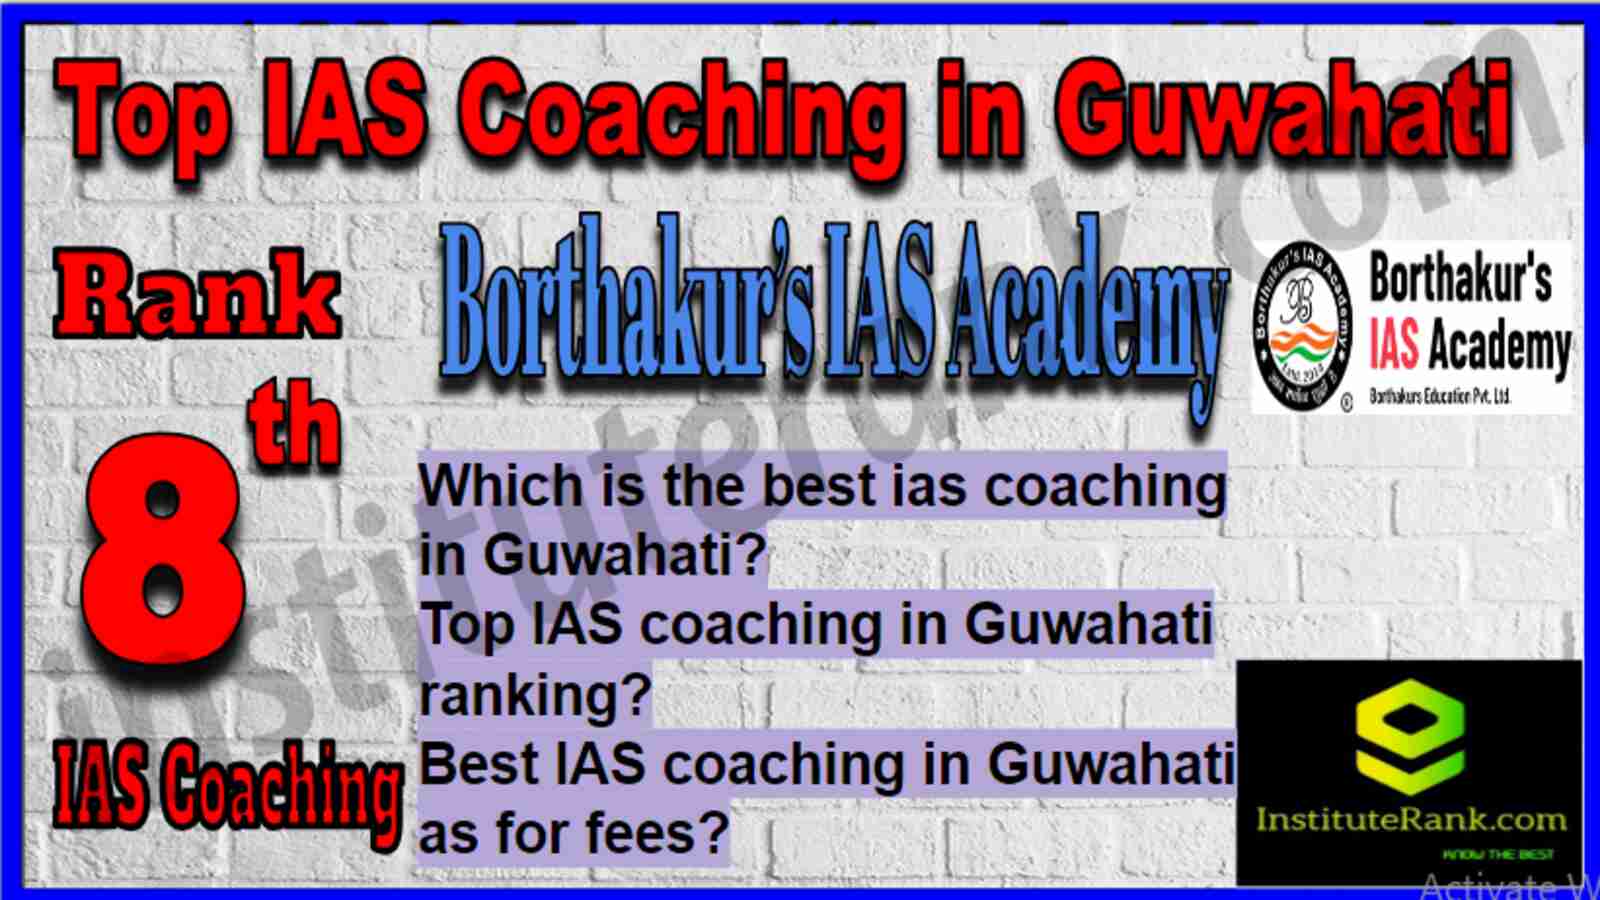 Rank 8 Top IAS Coaching in Guwahati